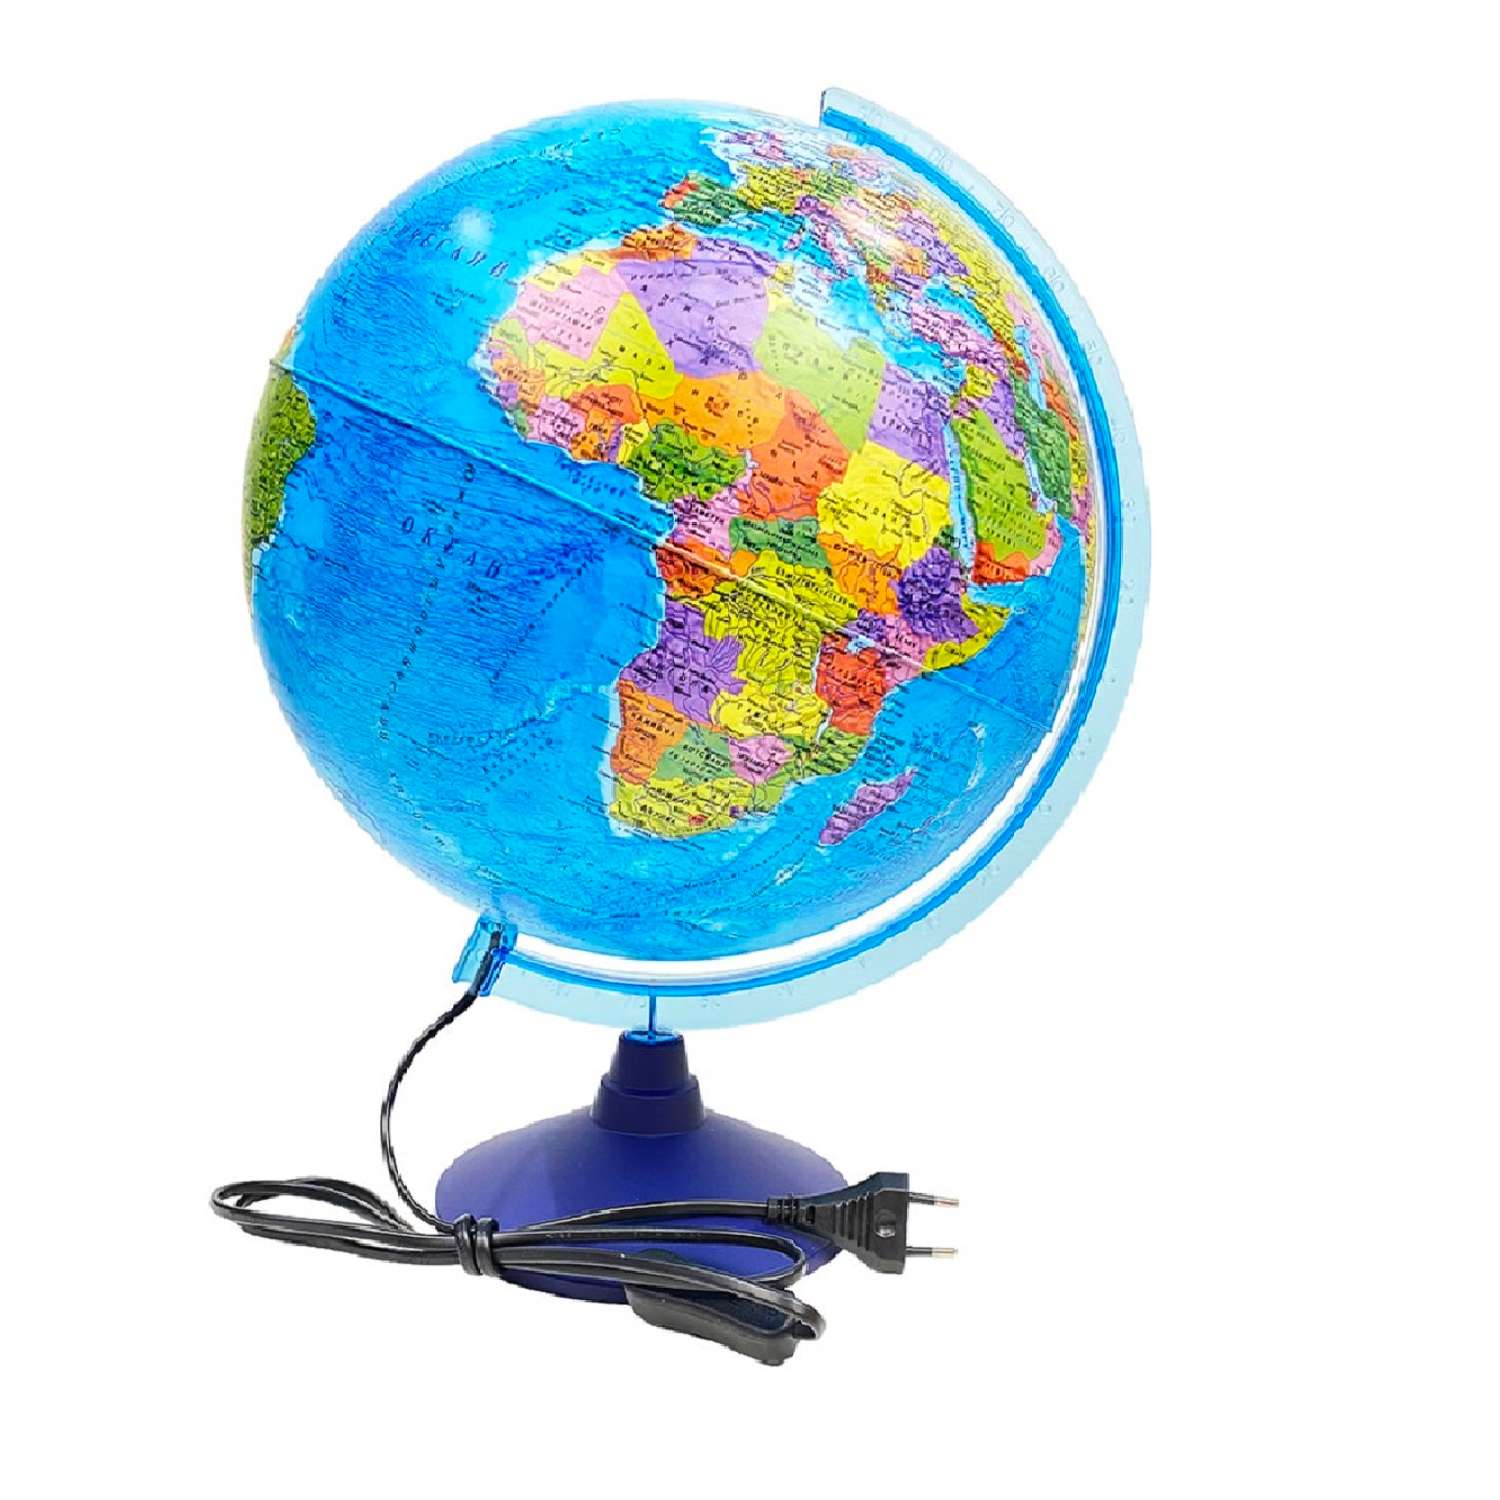 Глобус Globen Земли интерактивный политический 32см с LED-подсветкой атлас VR очки - фото 2